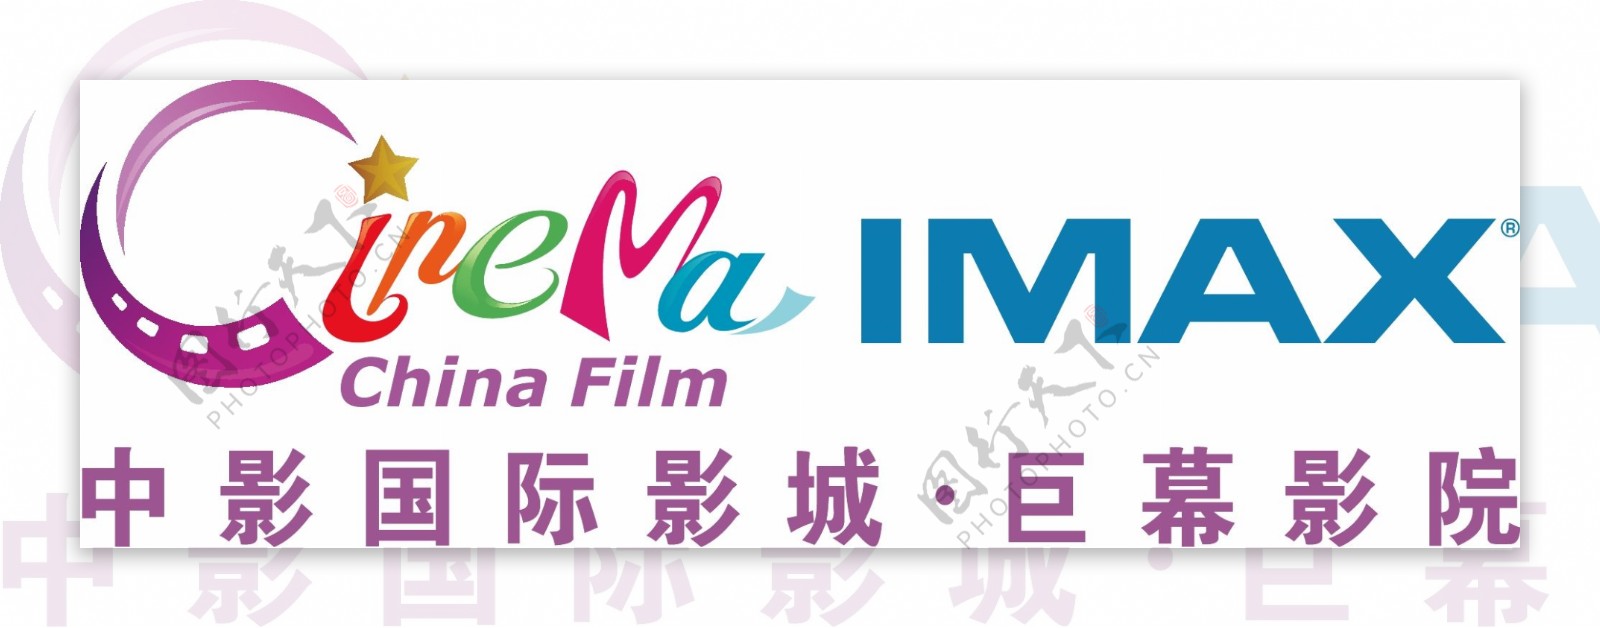 中影国际影城logo图片